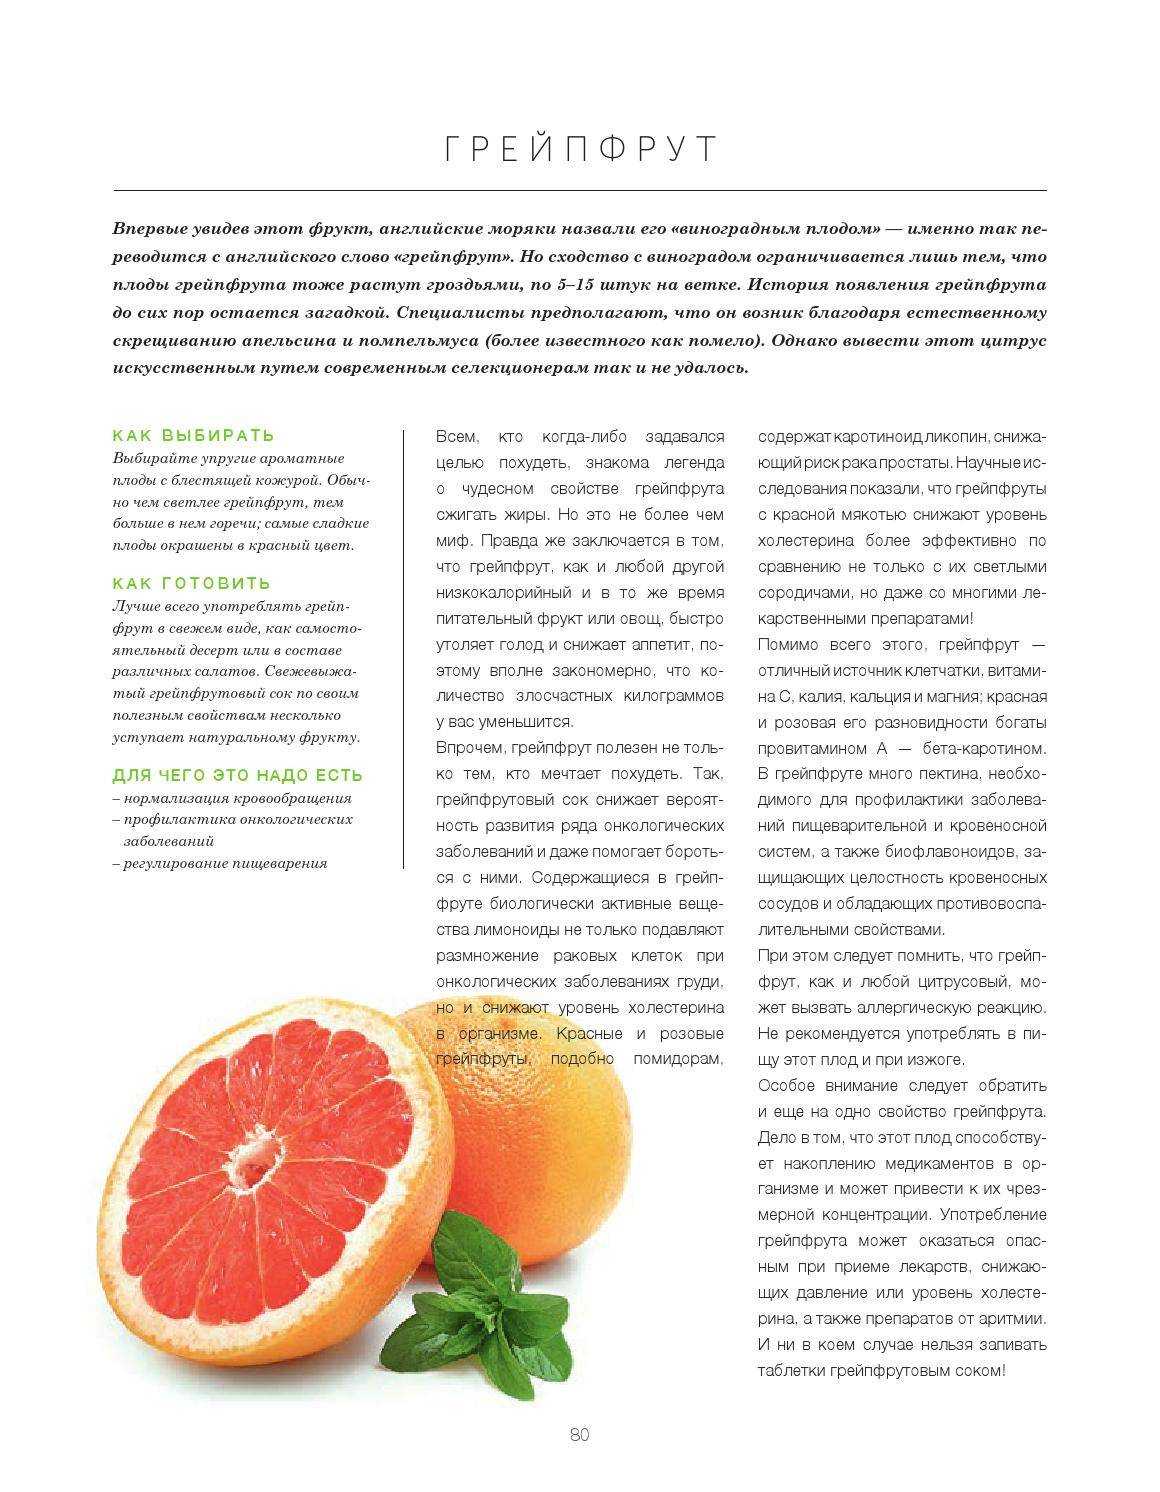 Употребление грейпфрута при беременности: польза или вред